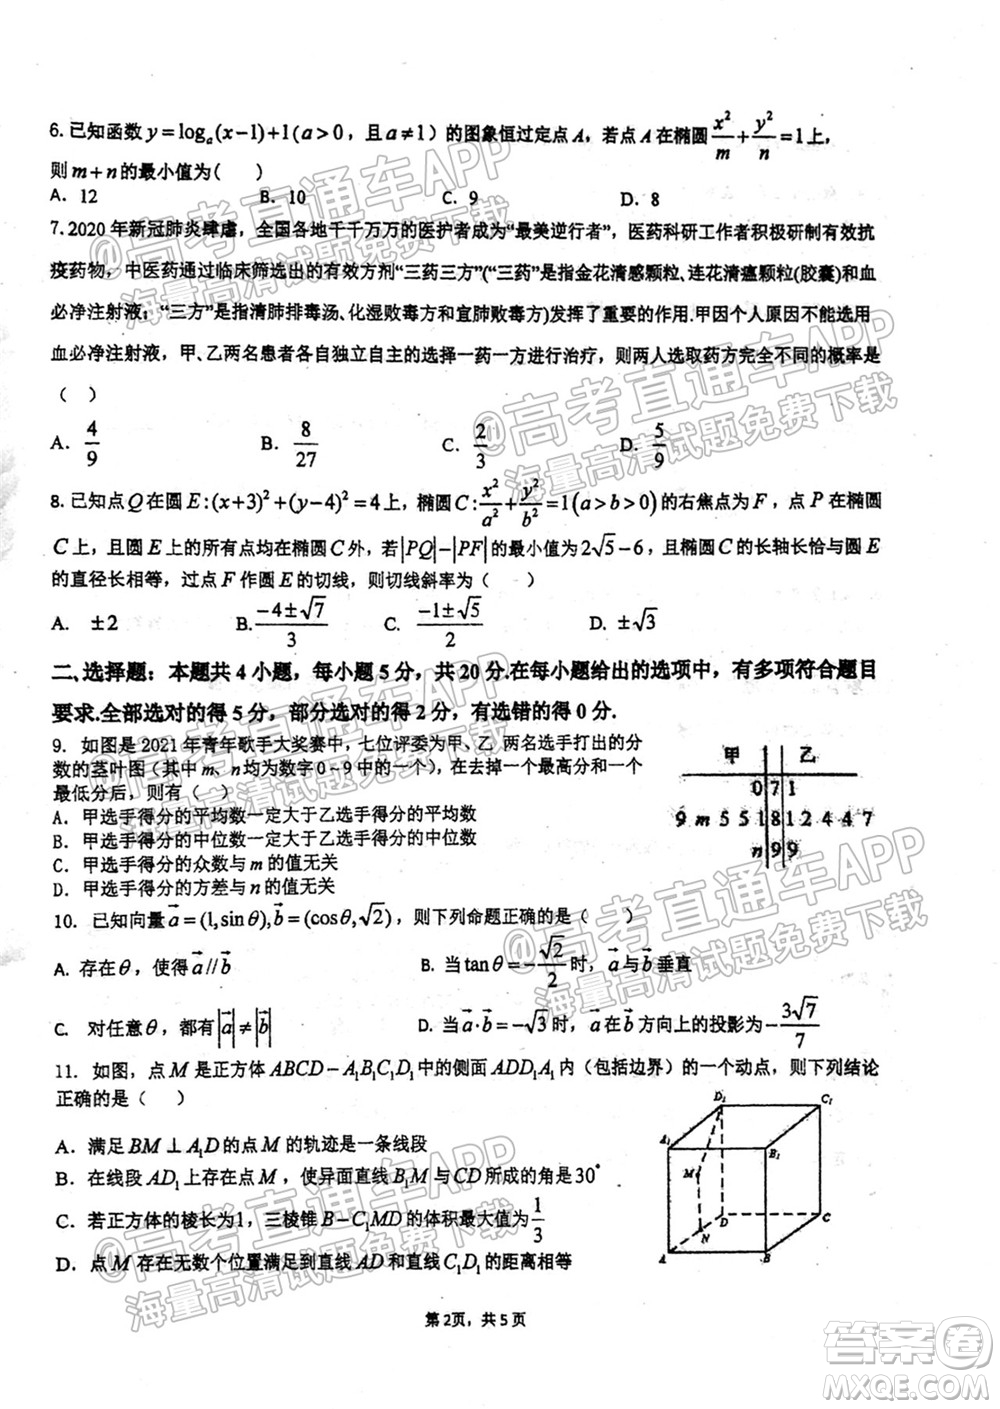 2021学年高三上学期8月省实执信广雅六中四校联考试卷数学试题及答案